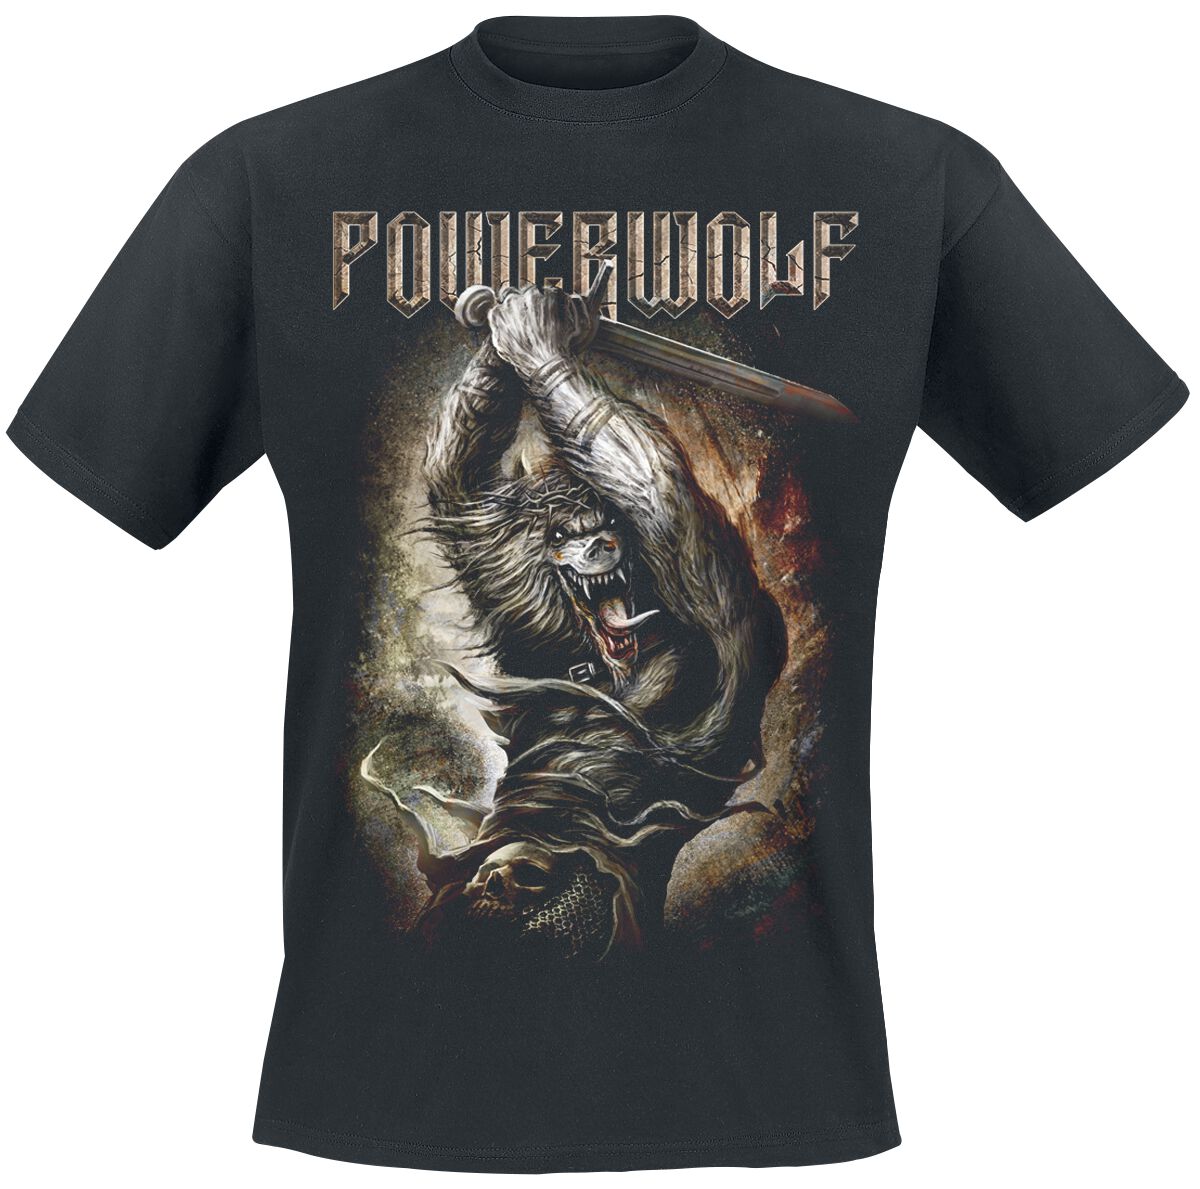 Powerwolf T-Shirt - Wolves Of War - S bis 5XL - für Männer - Größe XXL - schwarz  - Lizenziertes Merchandise!